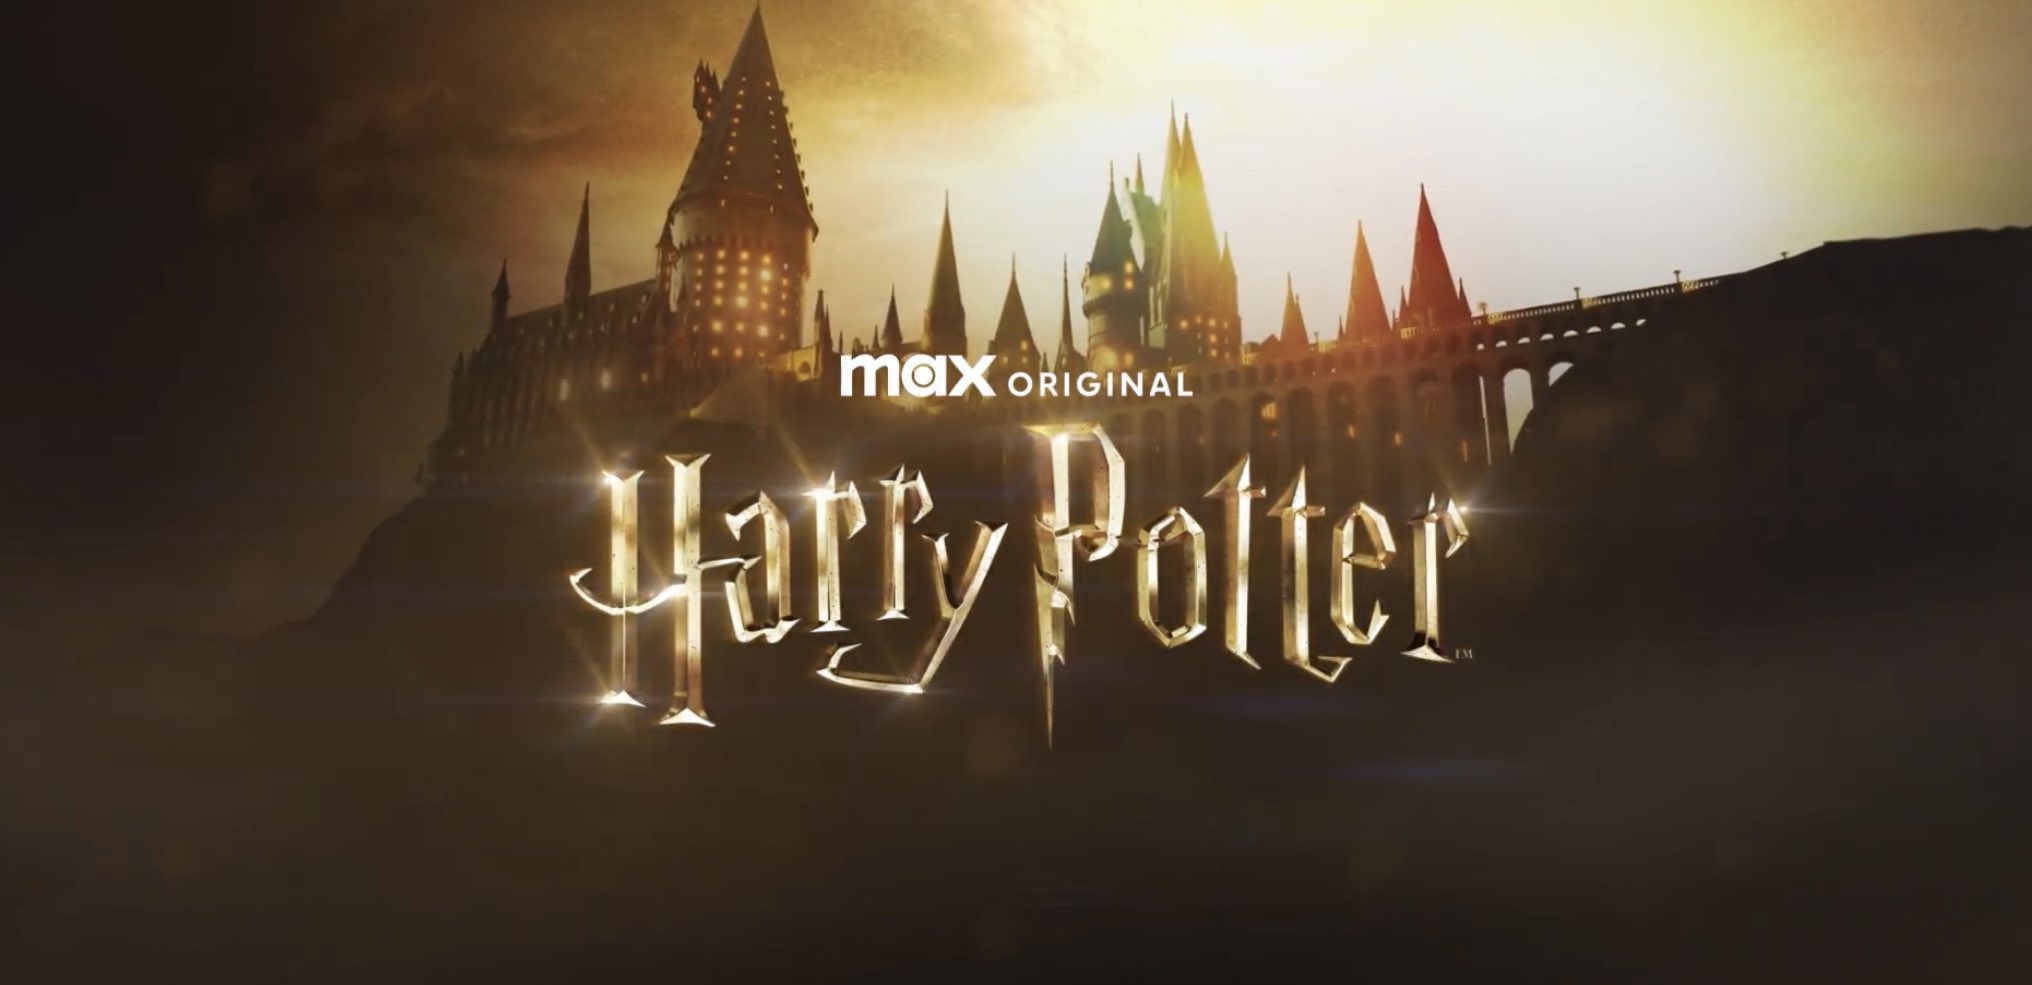 Тизер-трейлер перезапуска фильмов «Гарри Поттер» вышел - актерский состав новый